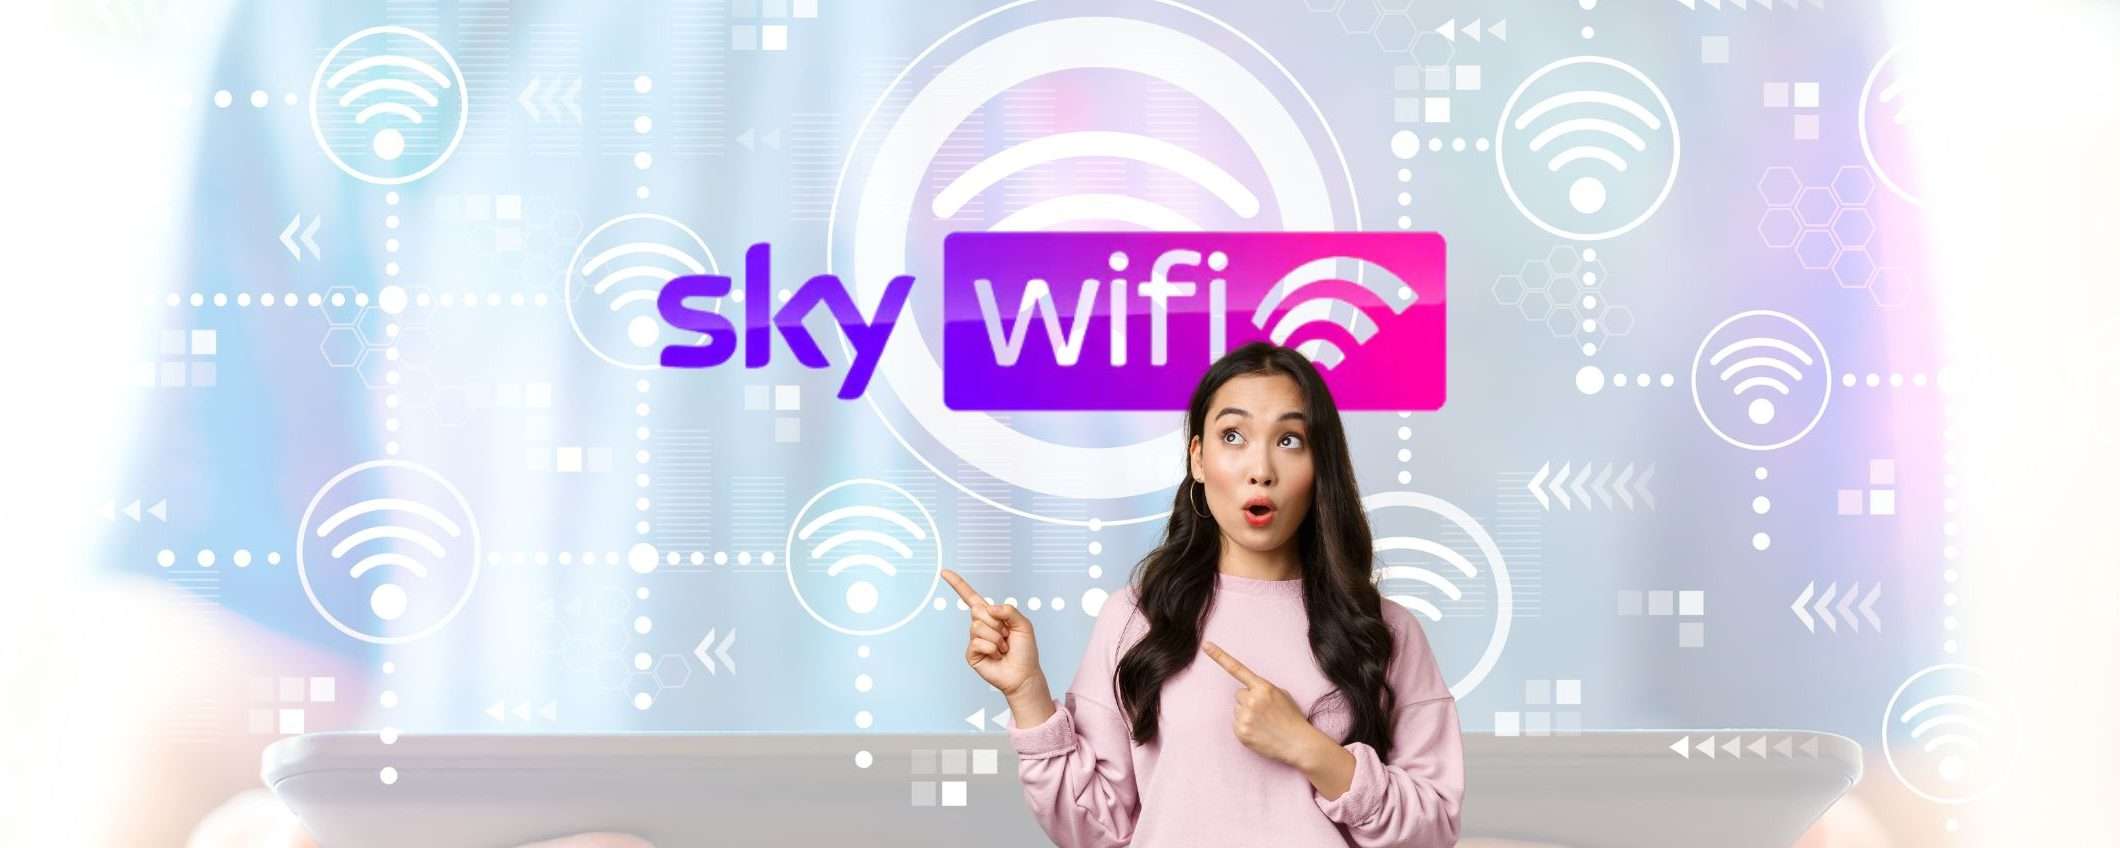 Affrettati! La fibra di Sky WiFi a 1 Gb/s in promozione